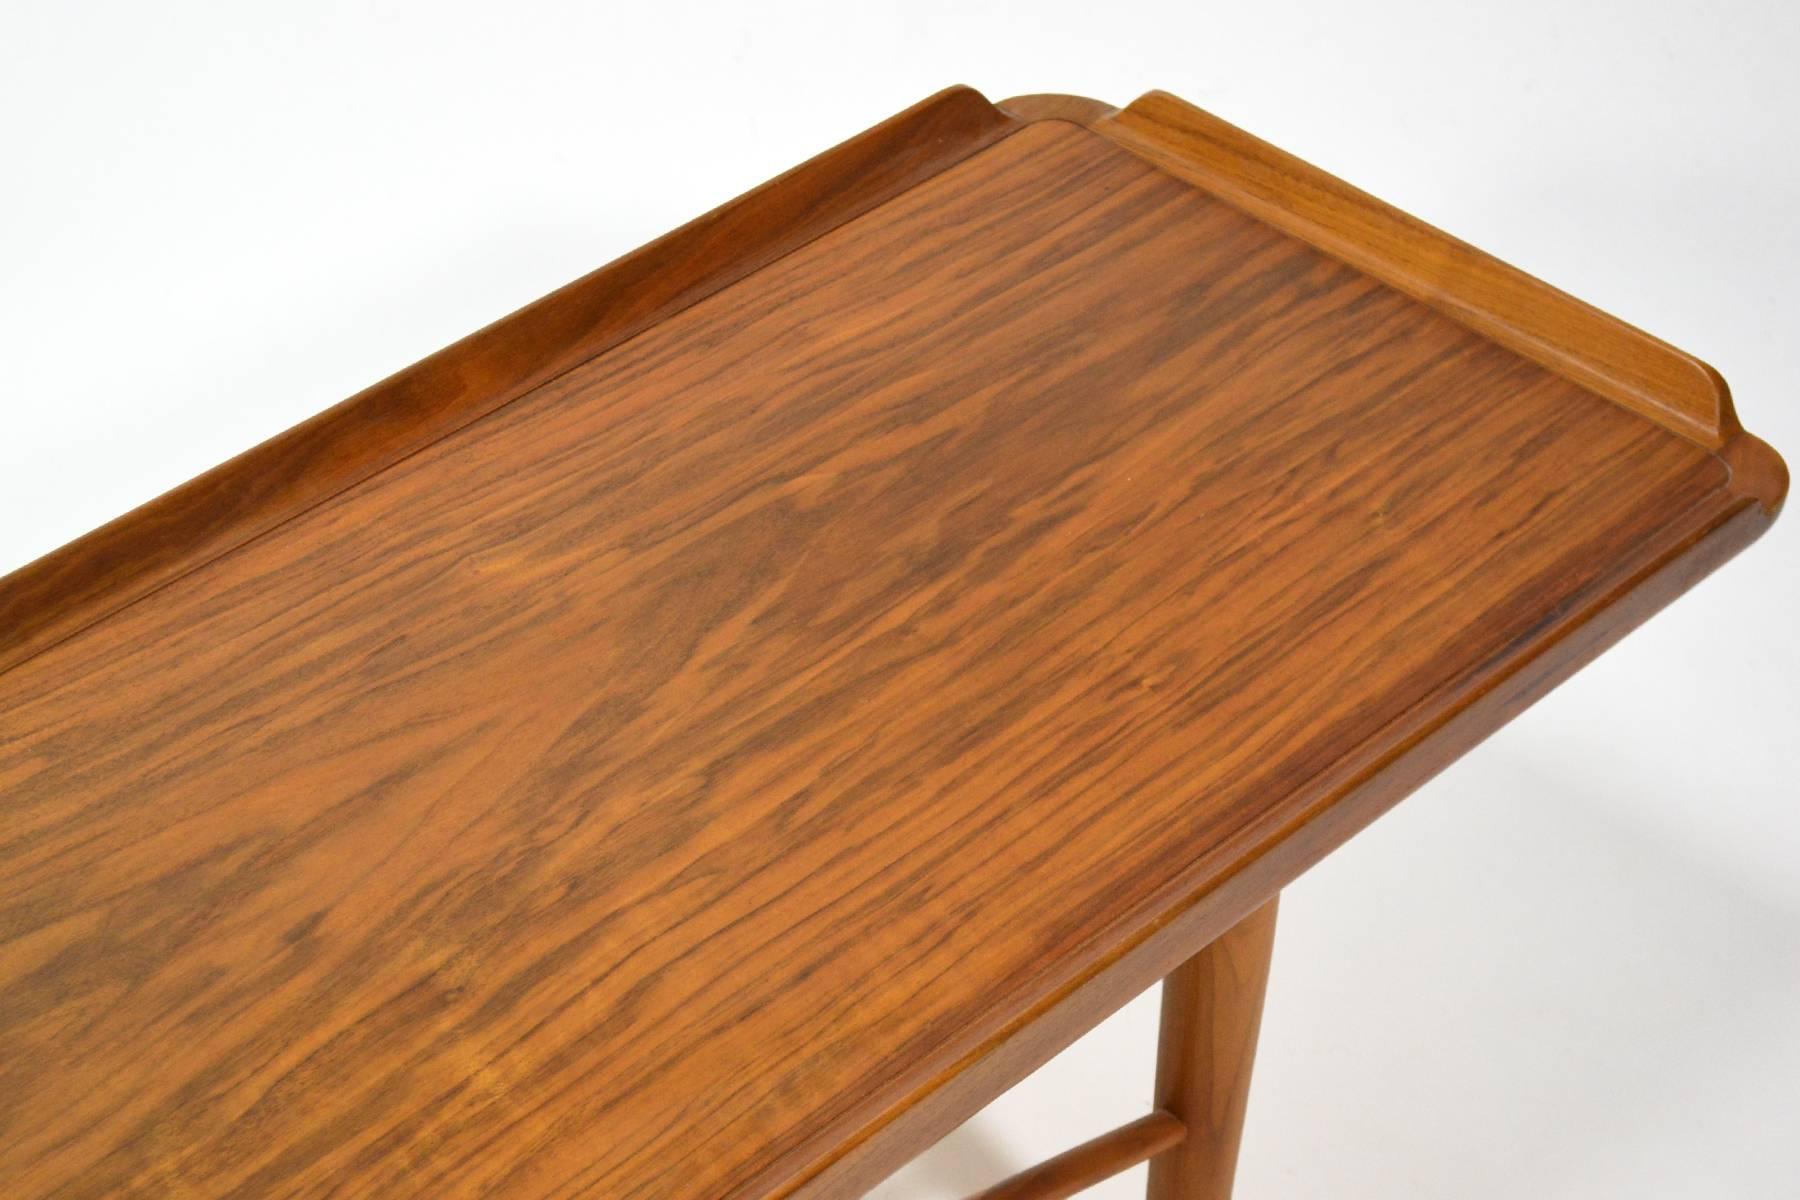 Finn Juhl Bench or Table by Baker 1